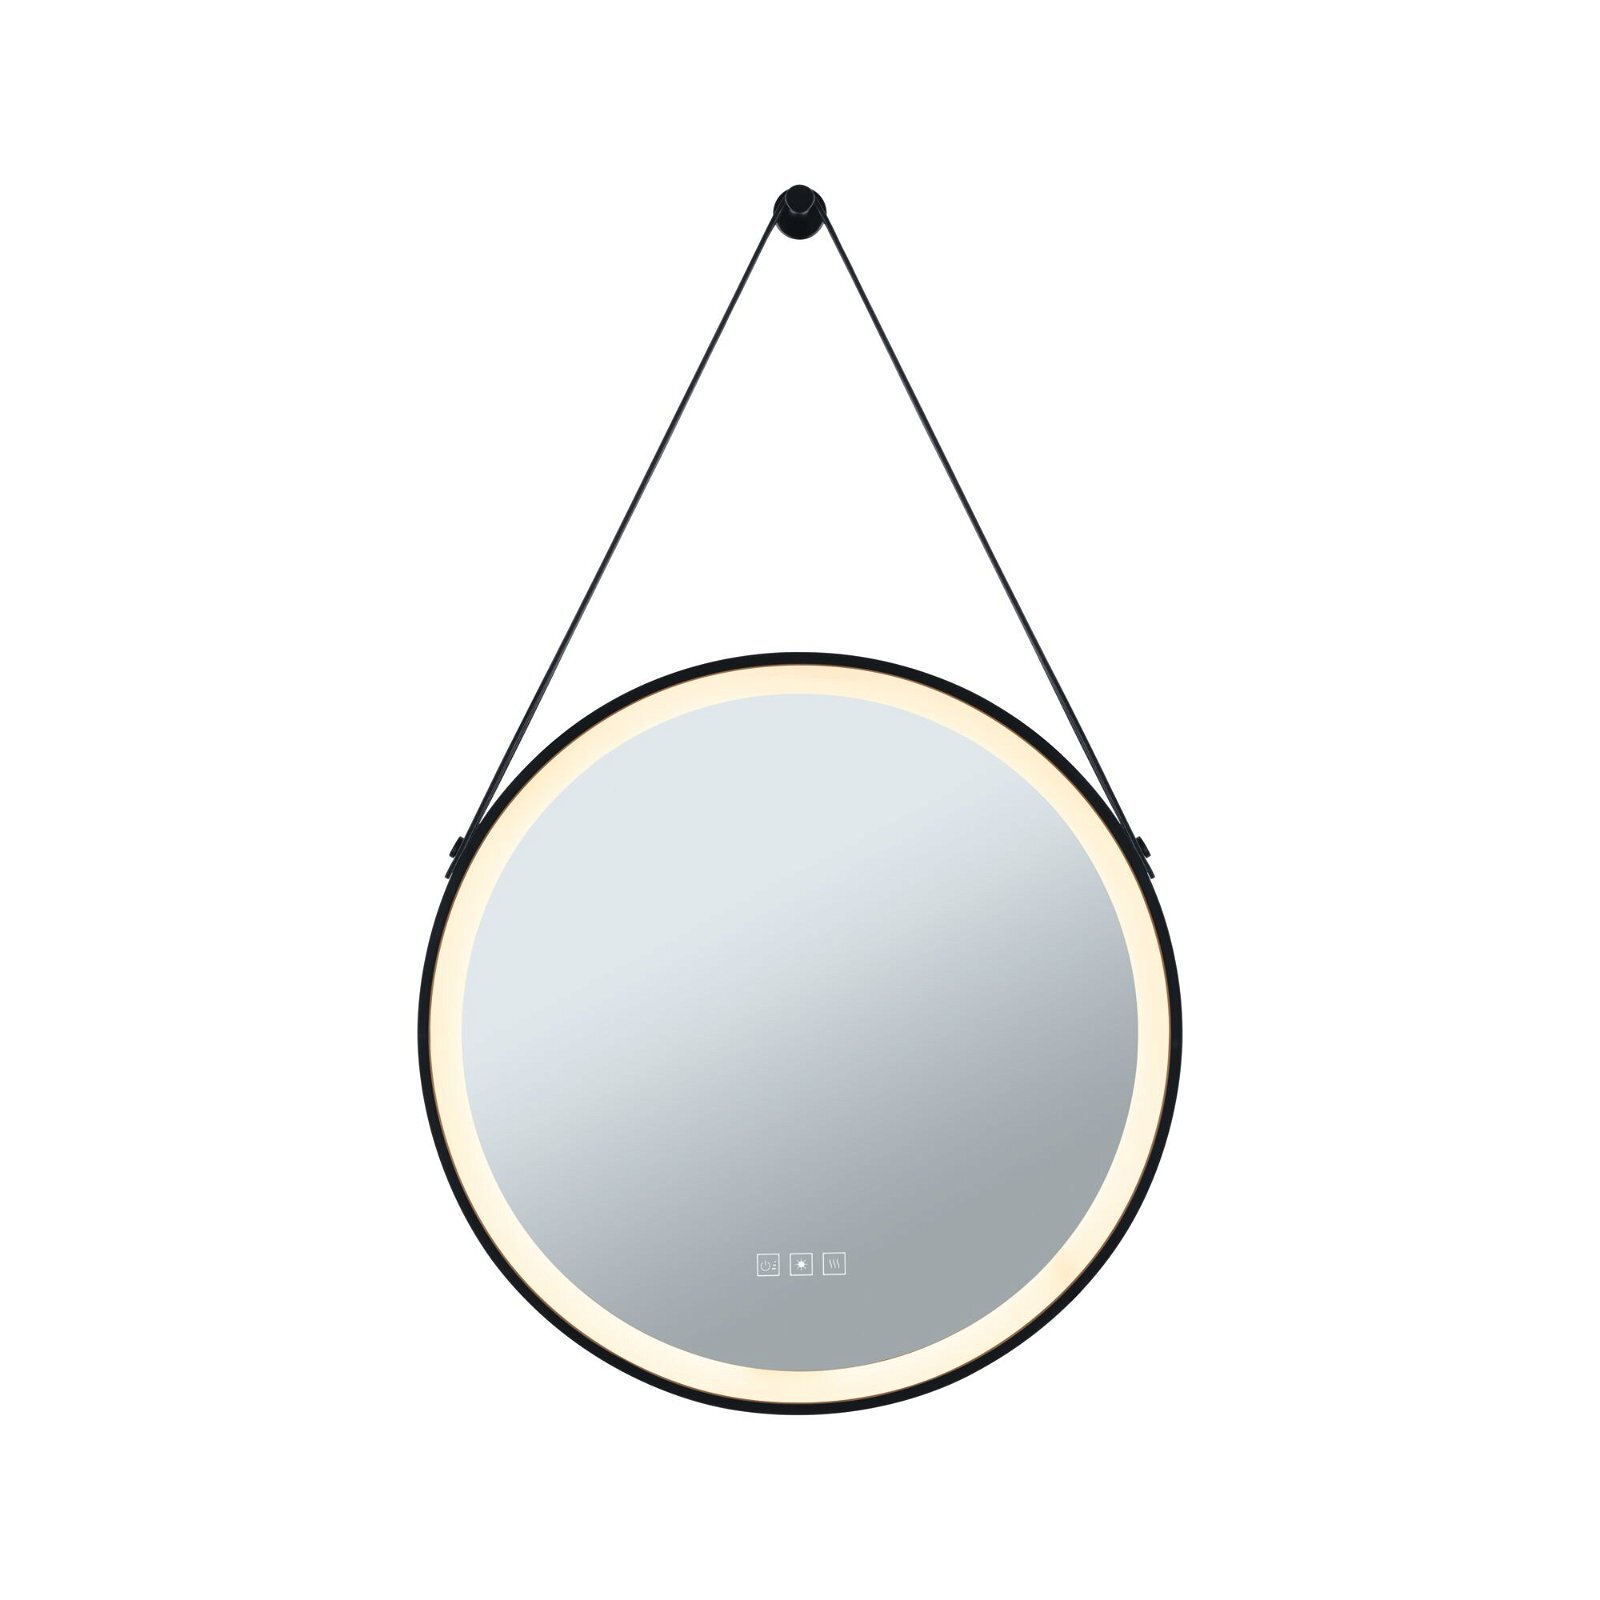 Paulmann LED-verlichte spiegel Mirra IP44 White Switch 750lm 230V 11,5W dimbaar Zwart/Spiegel